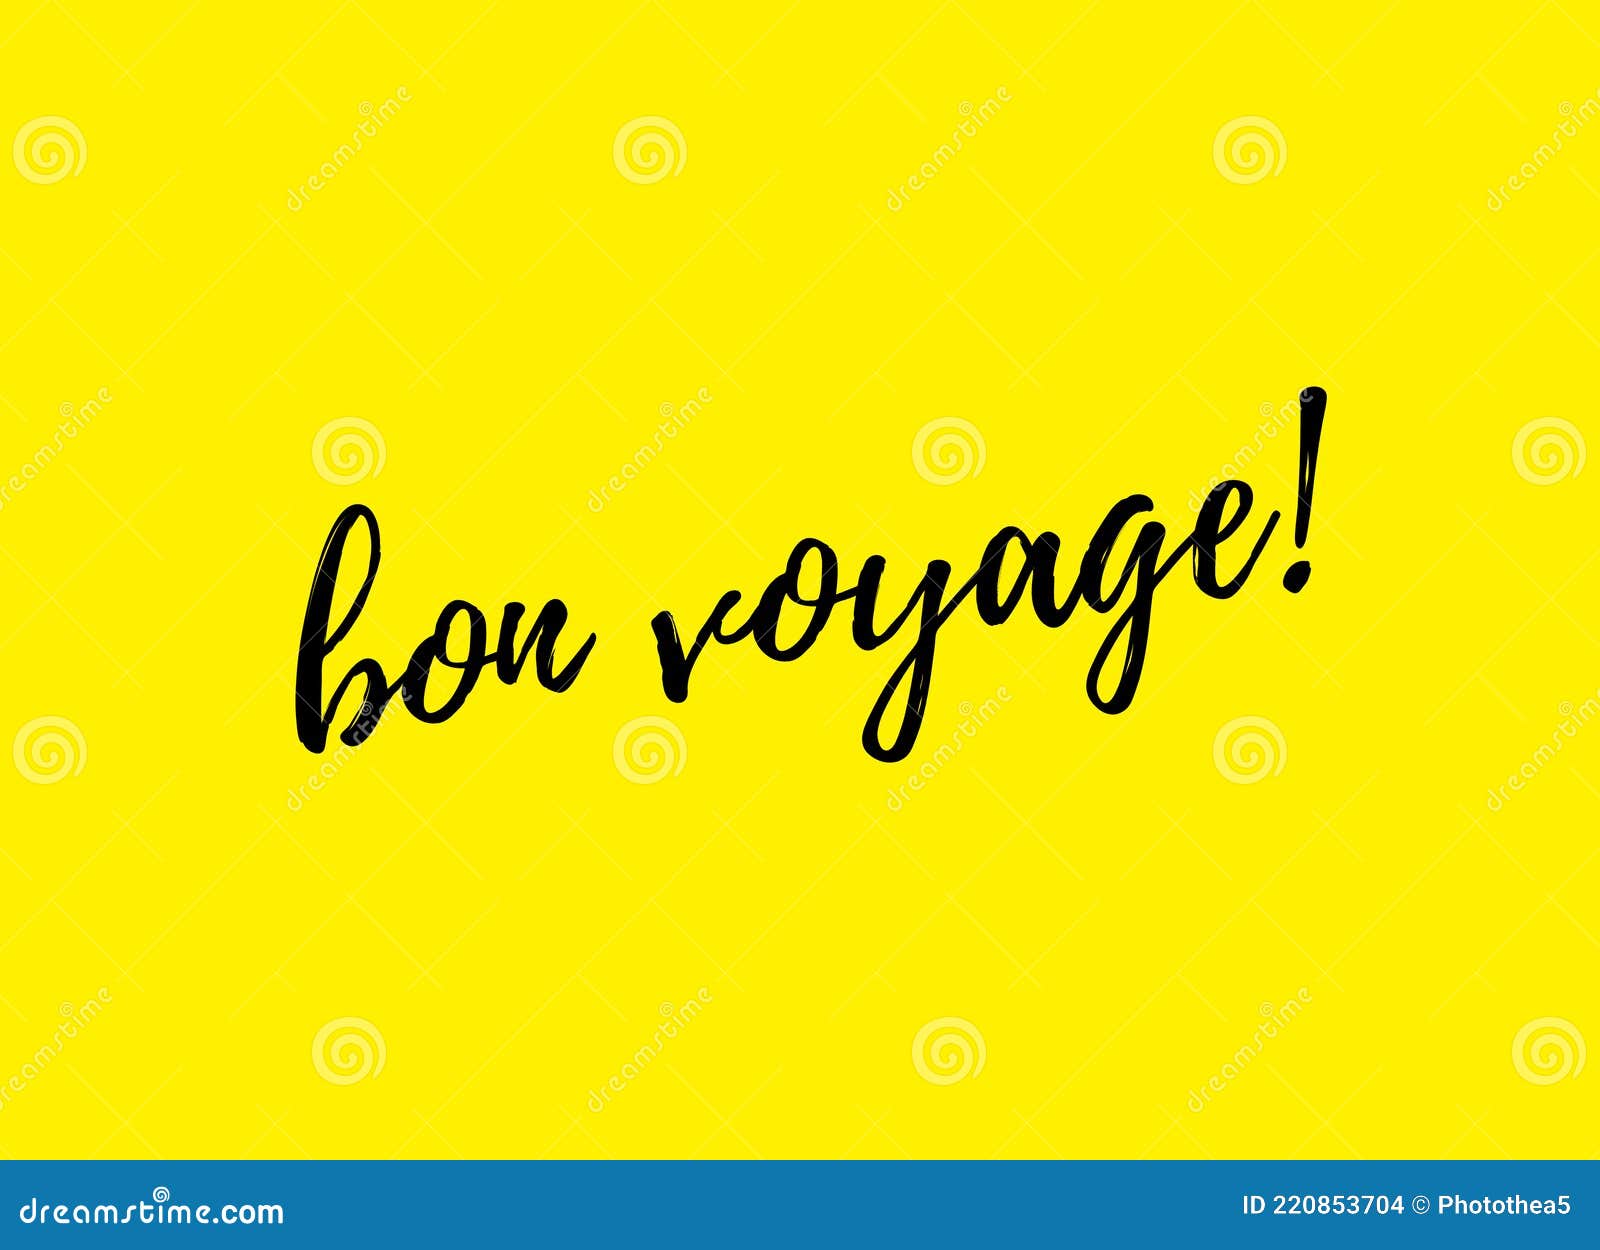 bon voyage language of origin